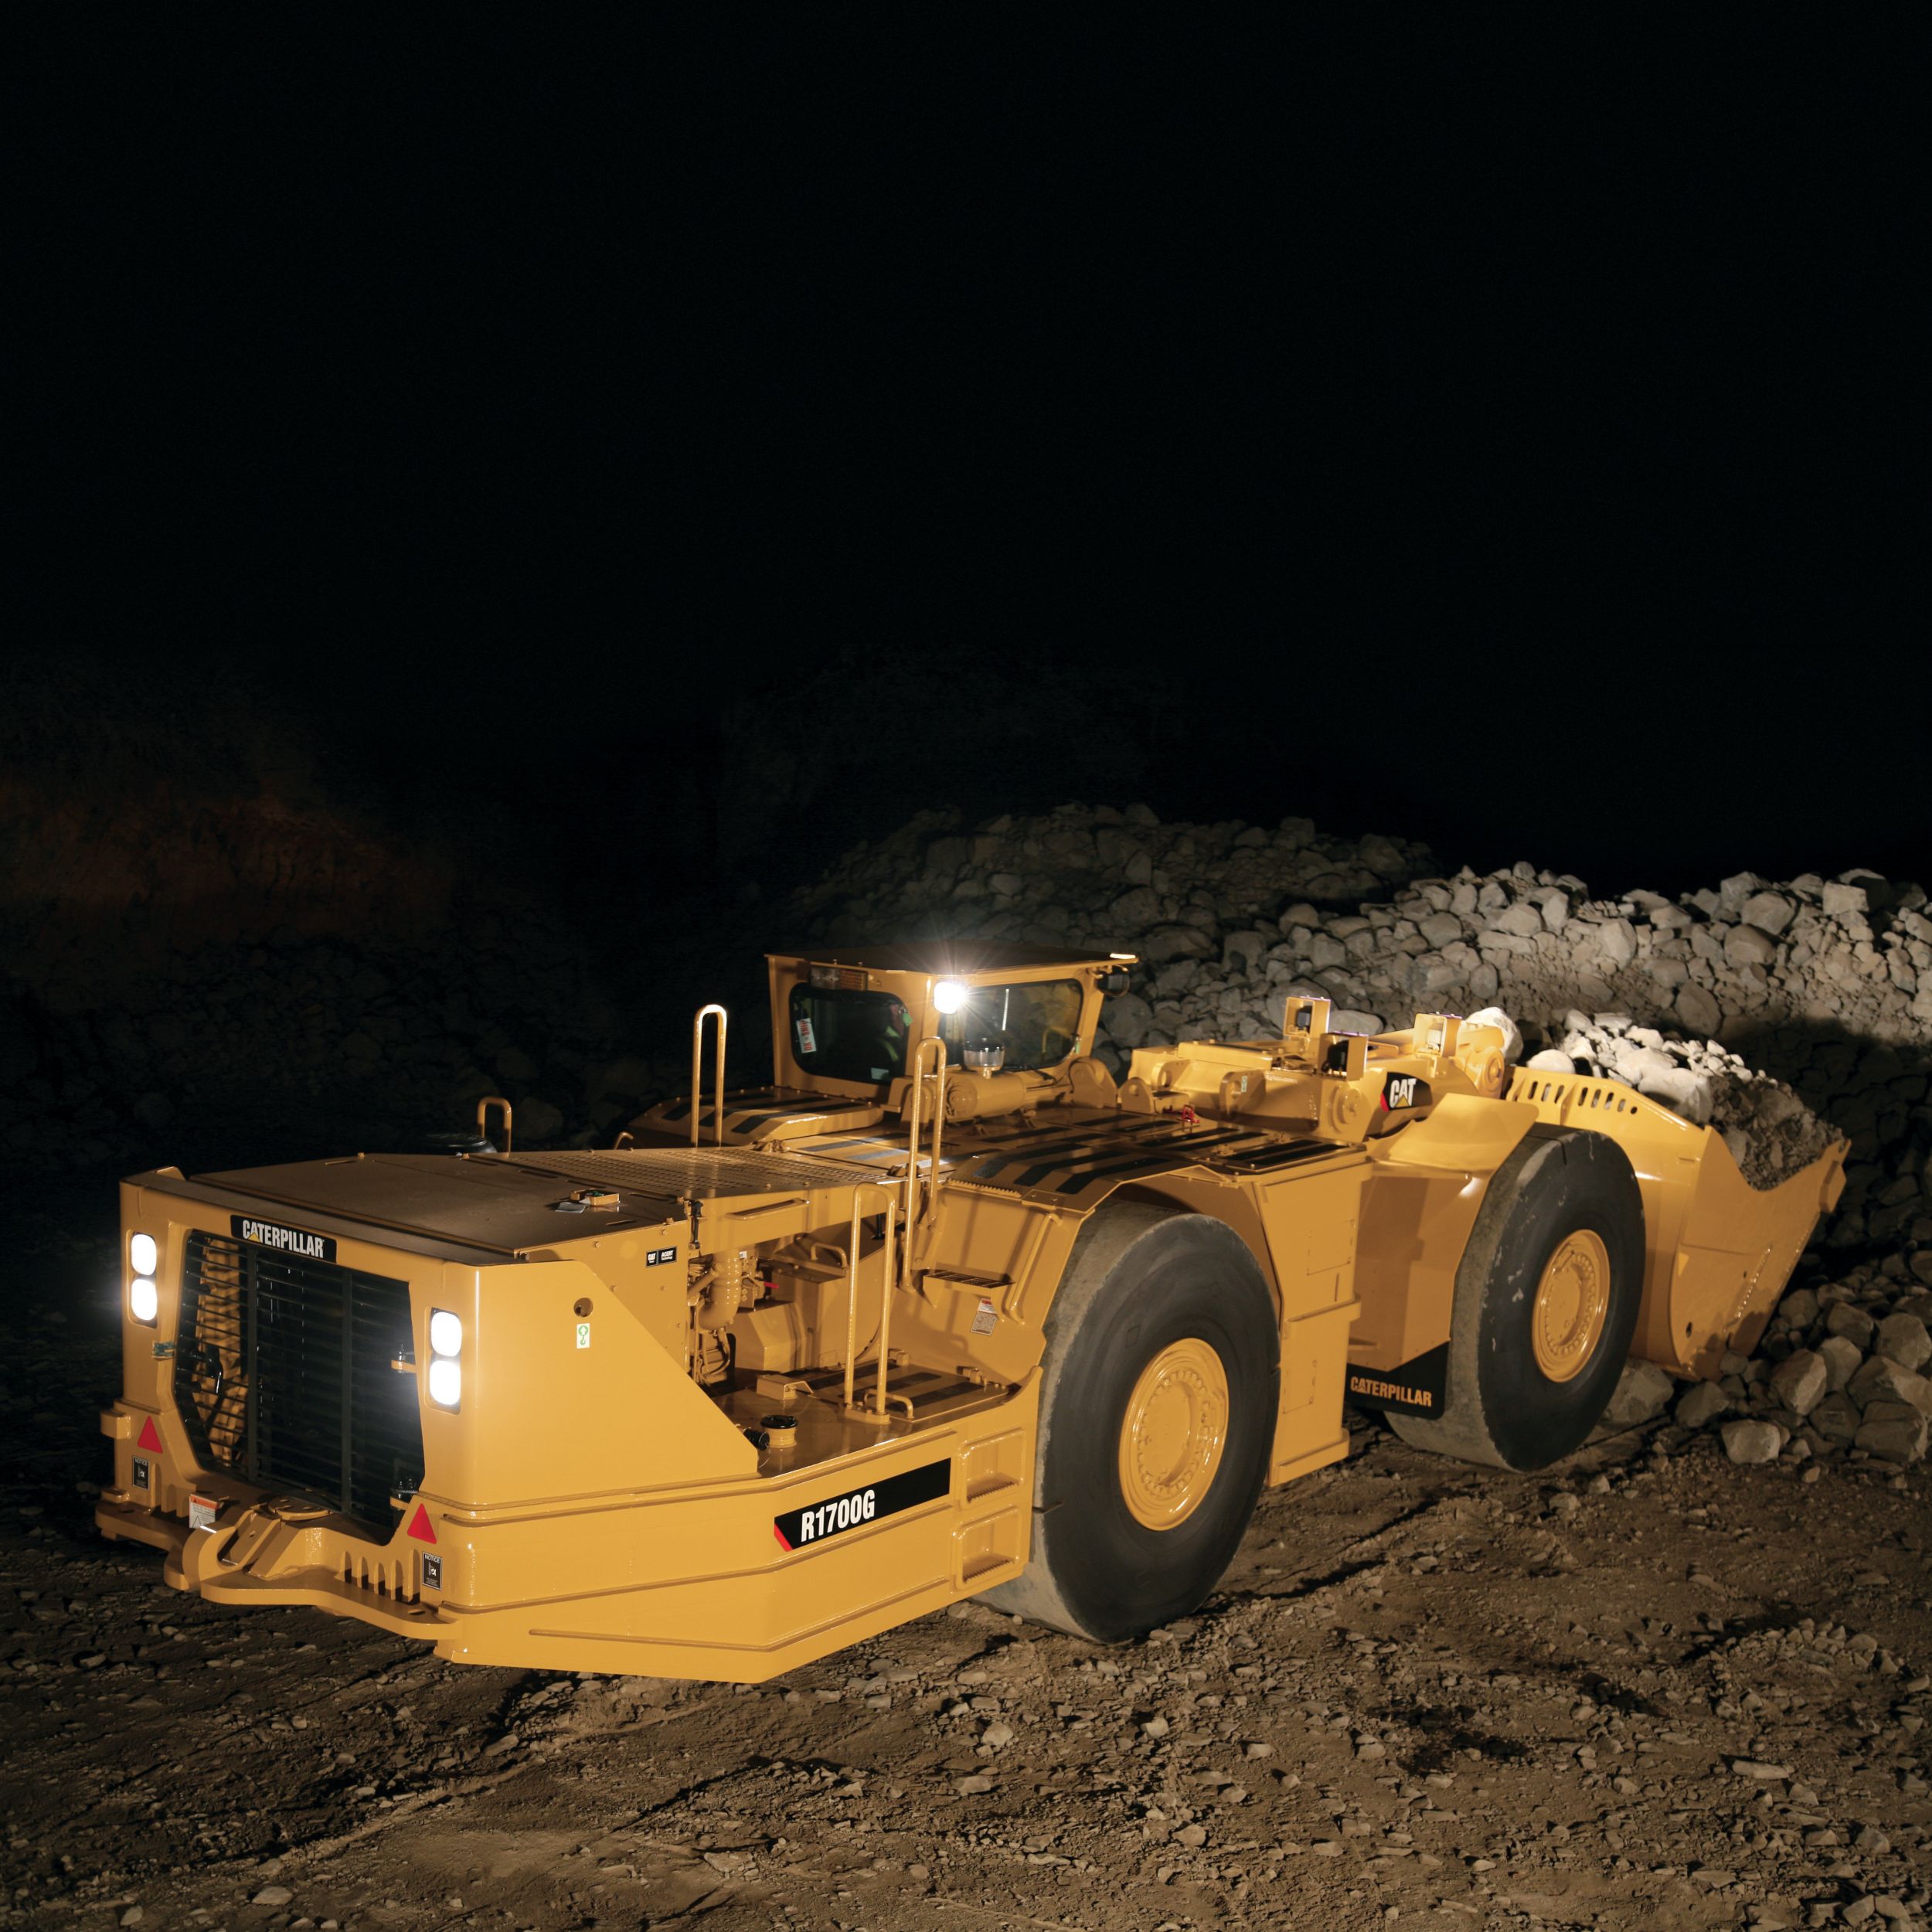 R1700G Underground Mining Load-Haul-Dump (LHD) Loader>